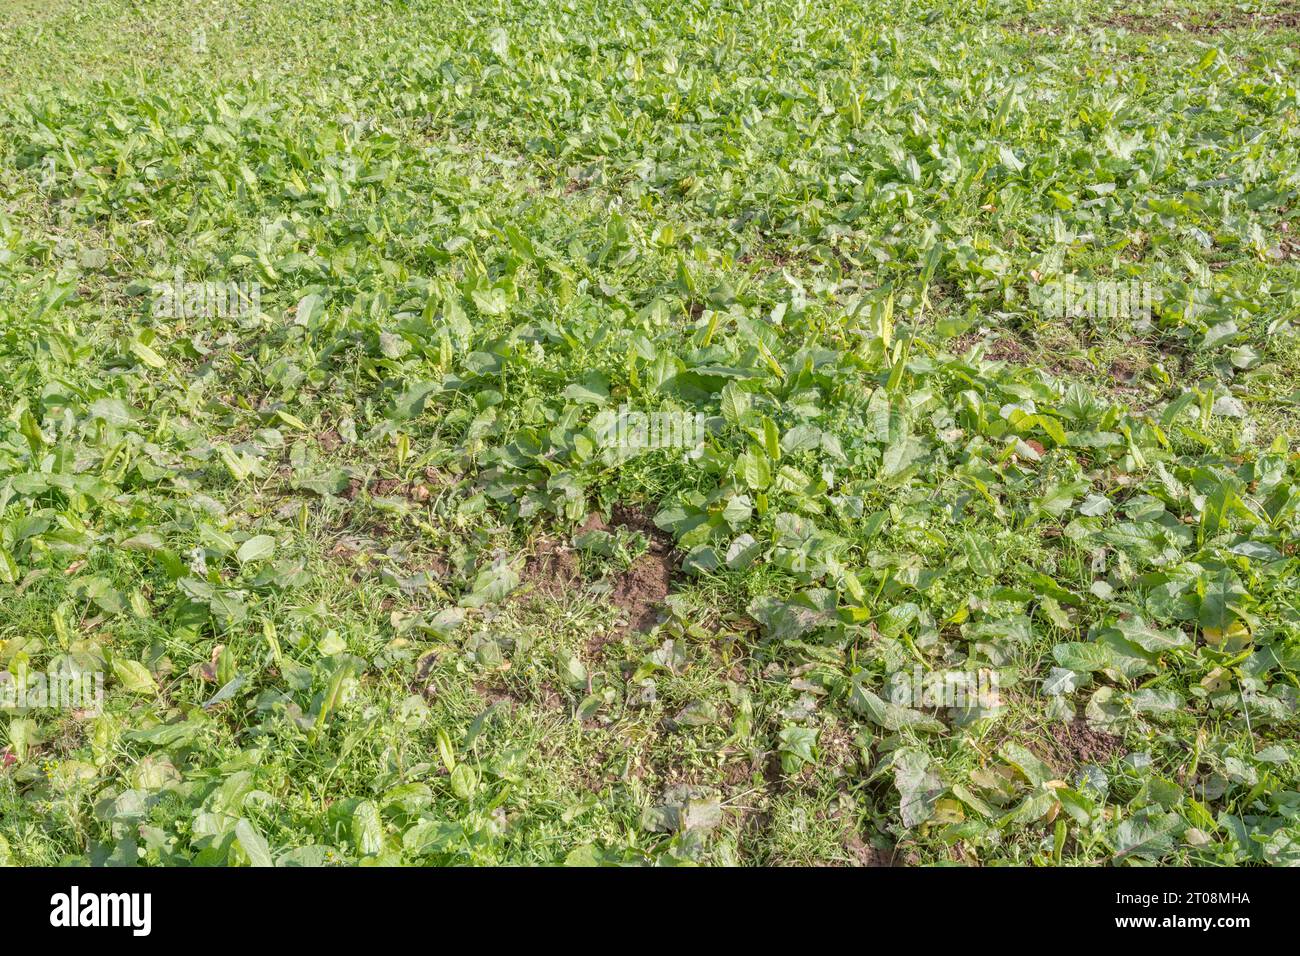 Campo autunnale dopo il raccolto dopo il raccolto estivo. Terreno assolutamente inghiottito da erbacce agricole, in particolare bacino a foglie larghe / Rumex obtusifolius. Foto Stock